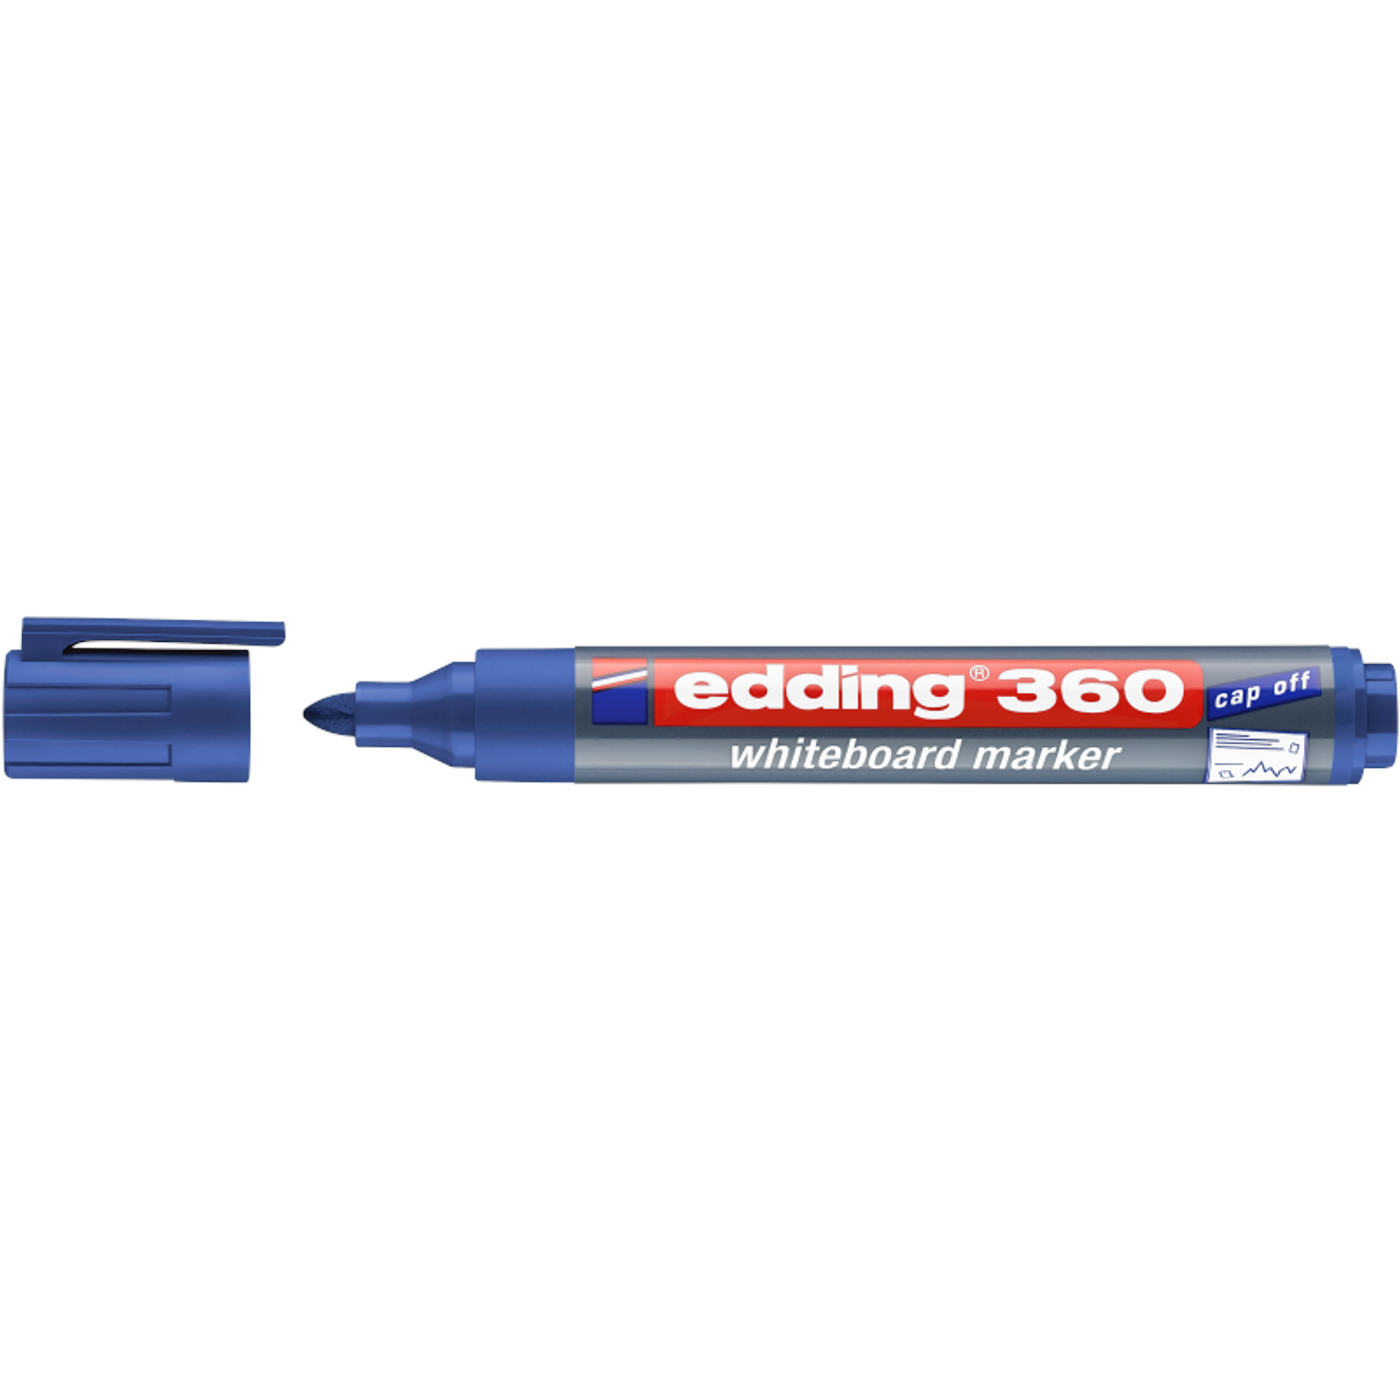 EDDING 360 WHITEBOARD MARKER (BLUE)